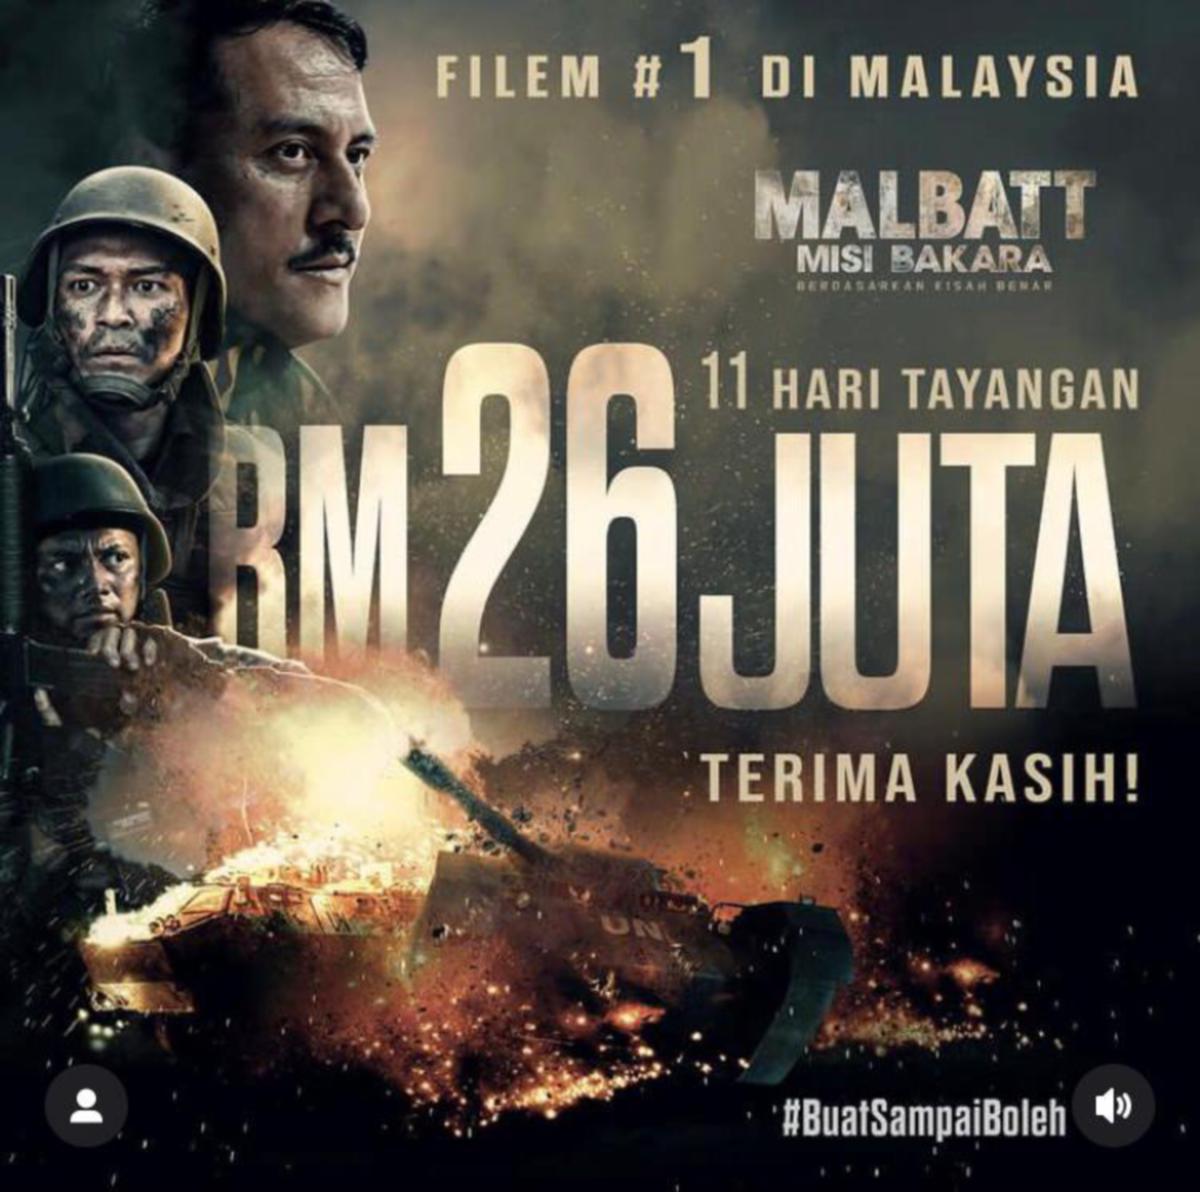 Filem Malbatt : Misi Bakara kutipan sebanyak RM26 juta selepas 11 hari tayangan sejak 24 Ogos lalu.